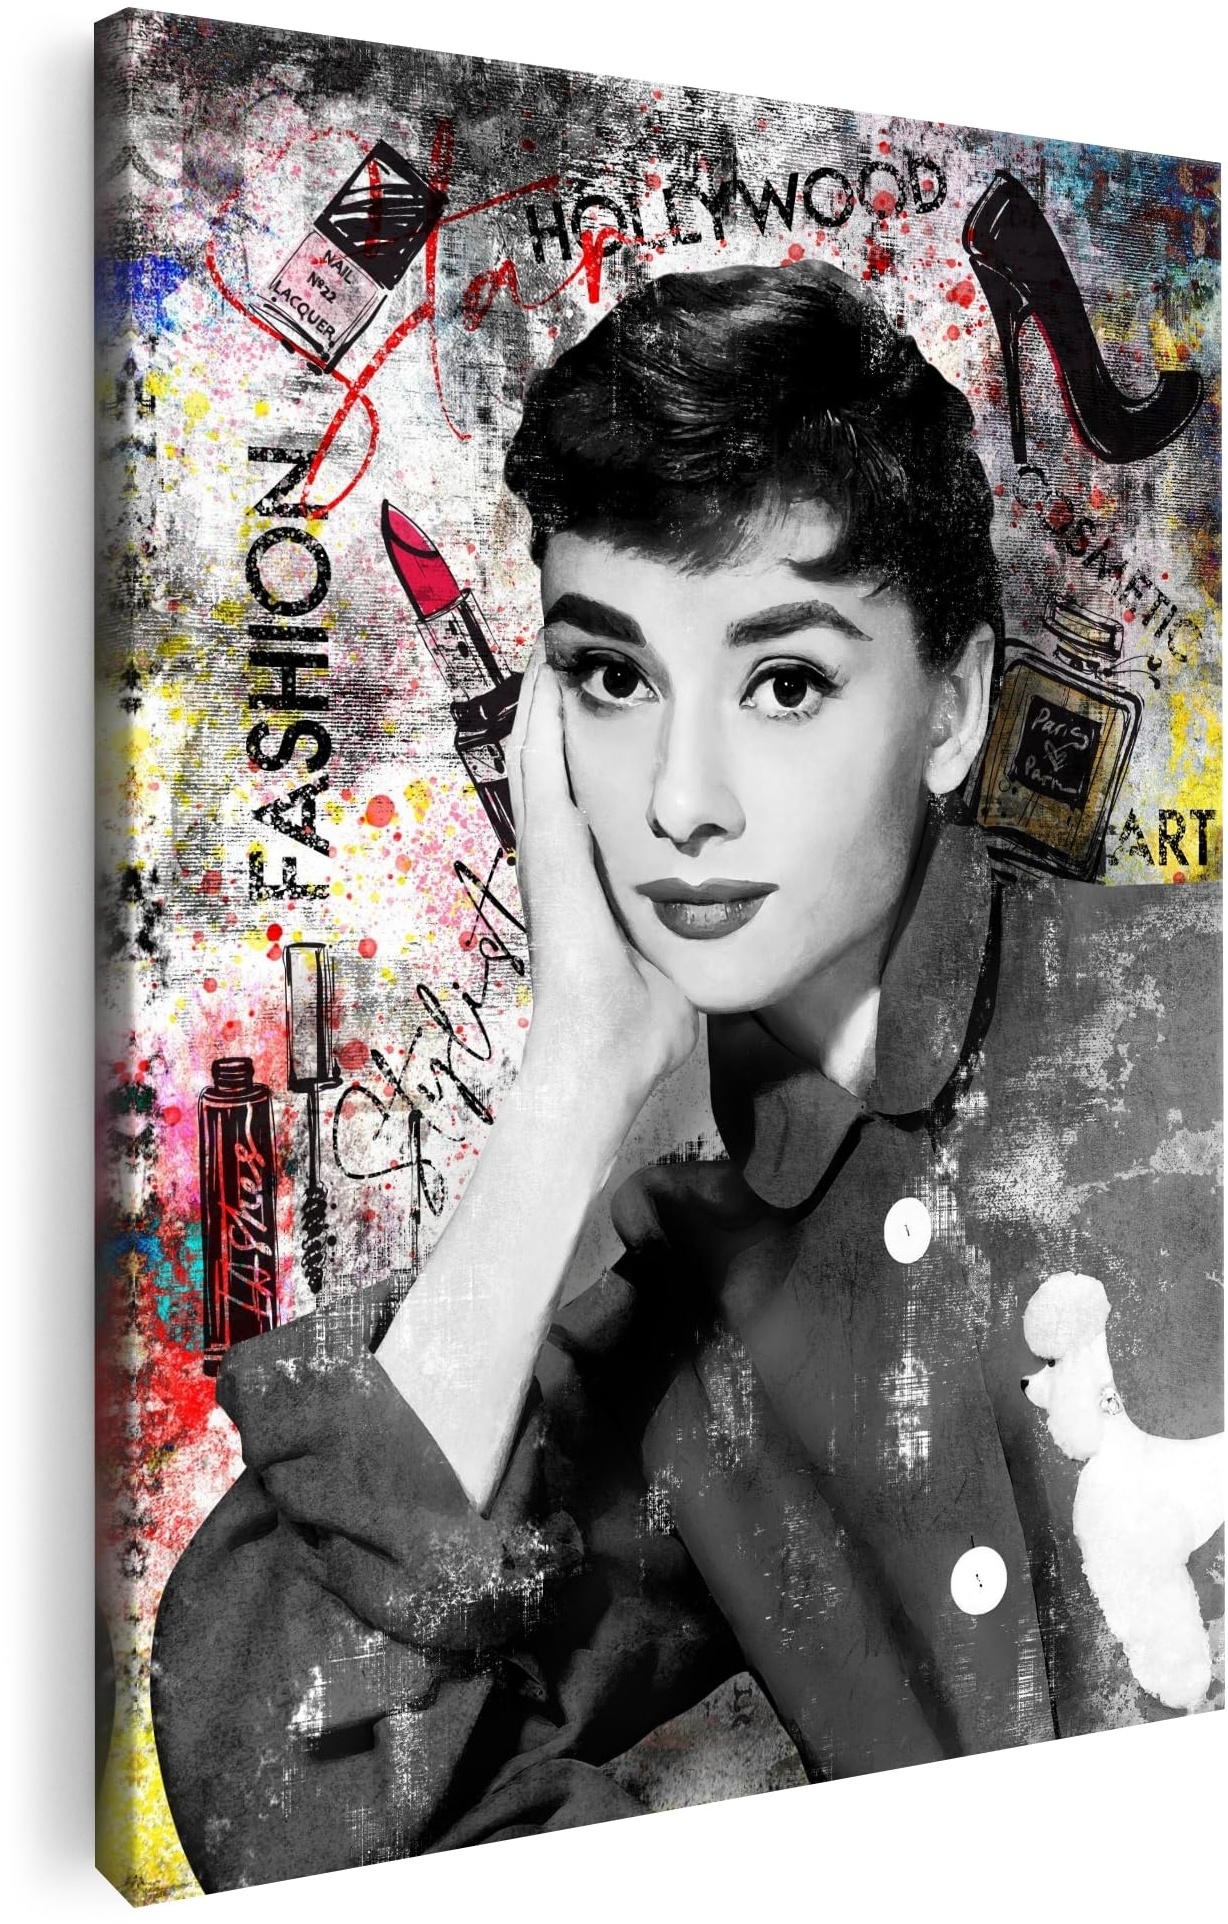 Artmazing | Audrey Hepburn bunt | Bild Filmstar | S-Art Bilder | Audrey Hepburn Bilder Modern | Coole Wandbilder Wohnzimmer | Wandbild Audrey Hepburn Deko XXL | Leinwand XXL | Audrey Hepburn Bilder